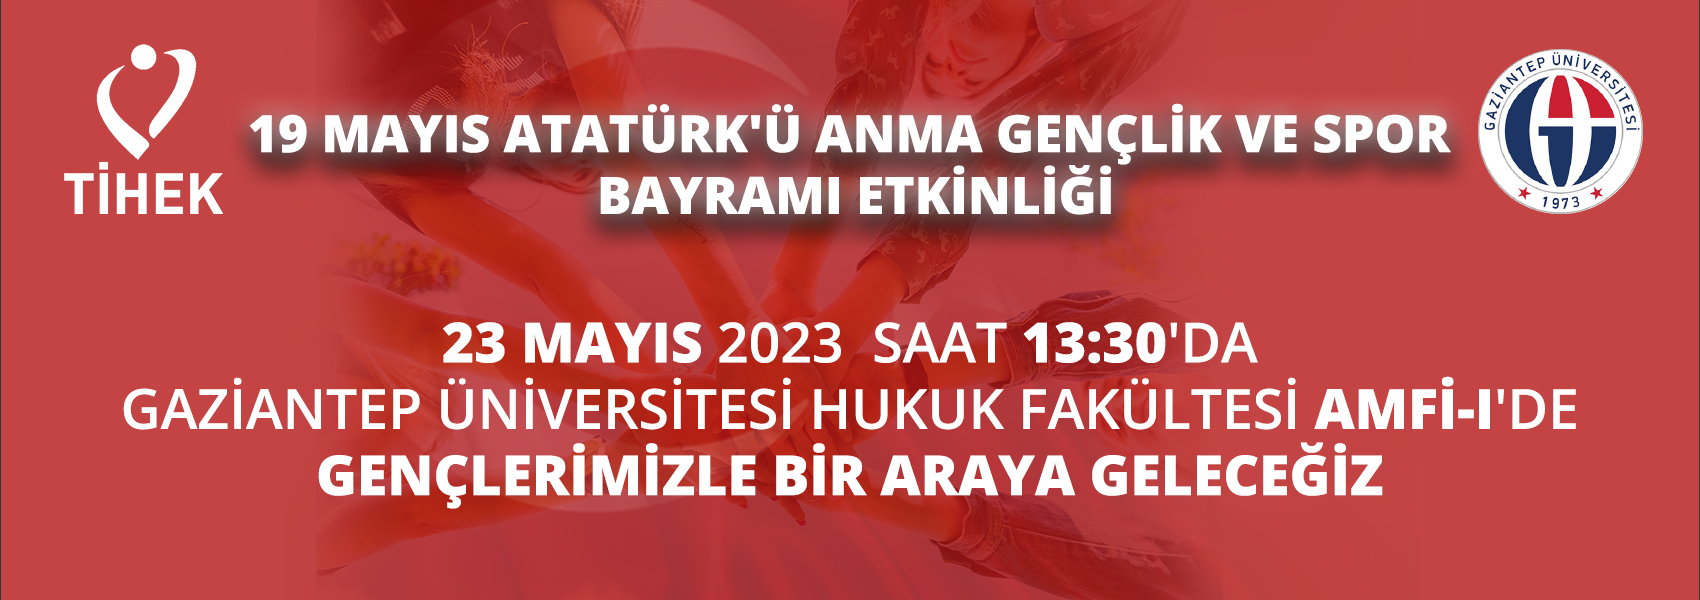 Gaziantep Üniversitesi Hukuk Fakültesinde Gençlerimizle Bir Araya Geleceğiz